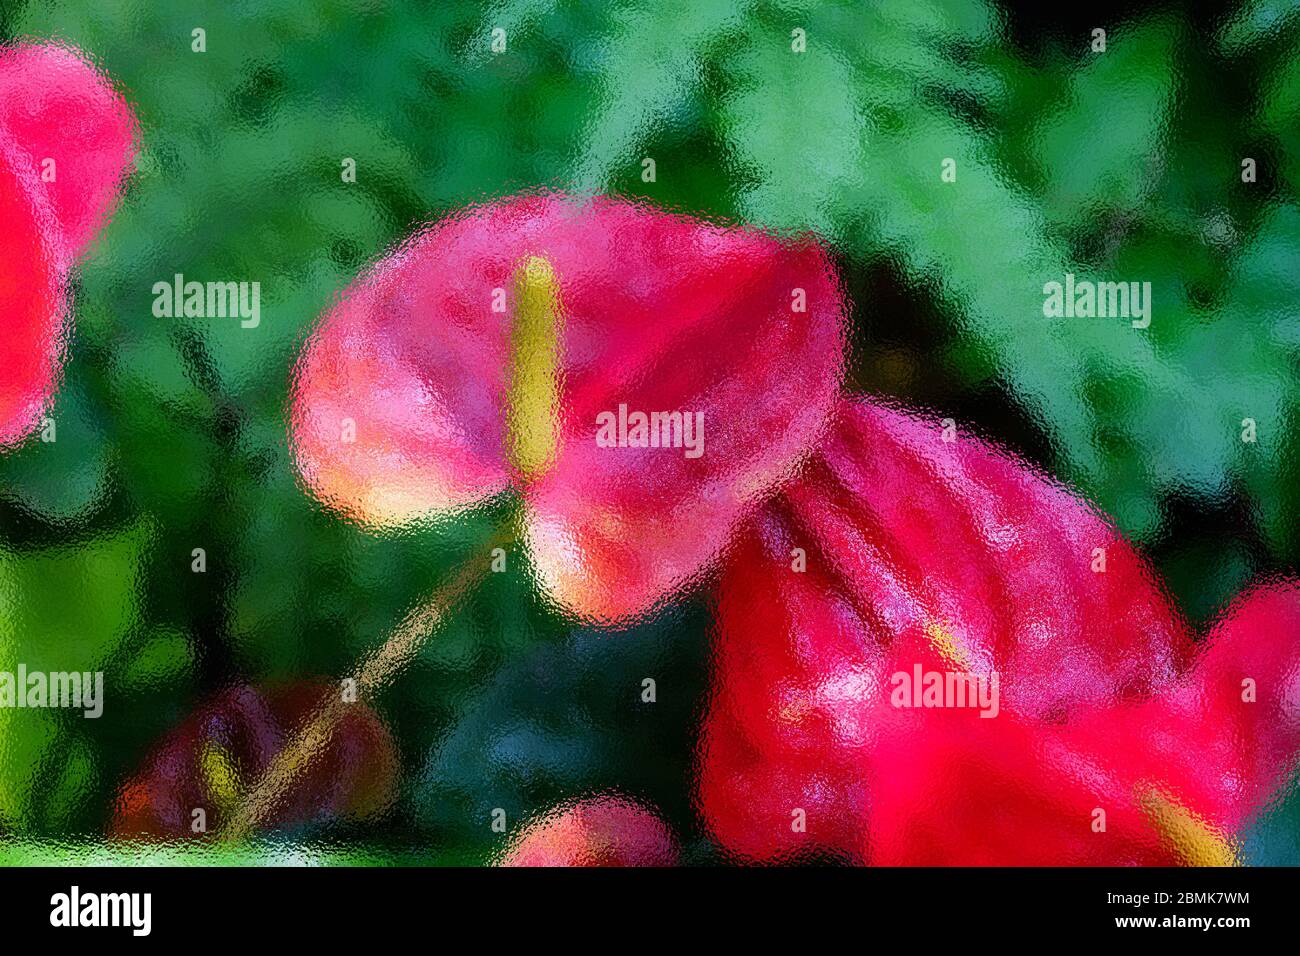 La imagen de cristal mate Abstract en Anthurium es una flor roja en forma de corazón. Las hojas verdes oscuras como fondo hacen que las flores destaquen maravillosamente. Foto de stock